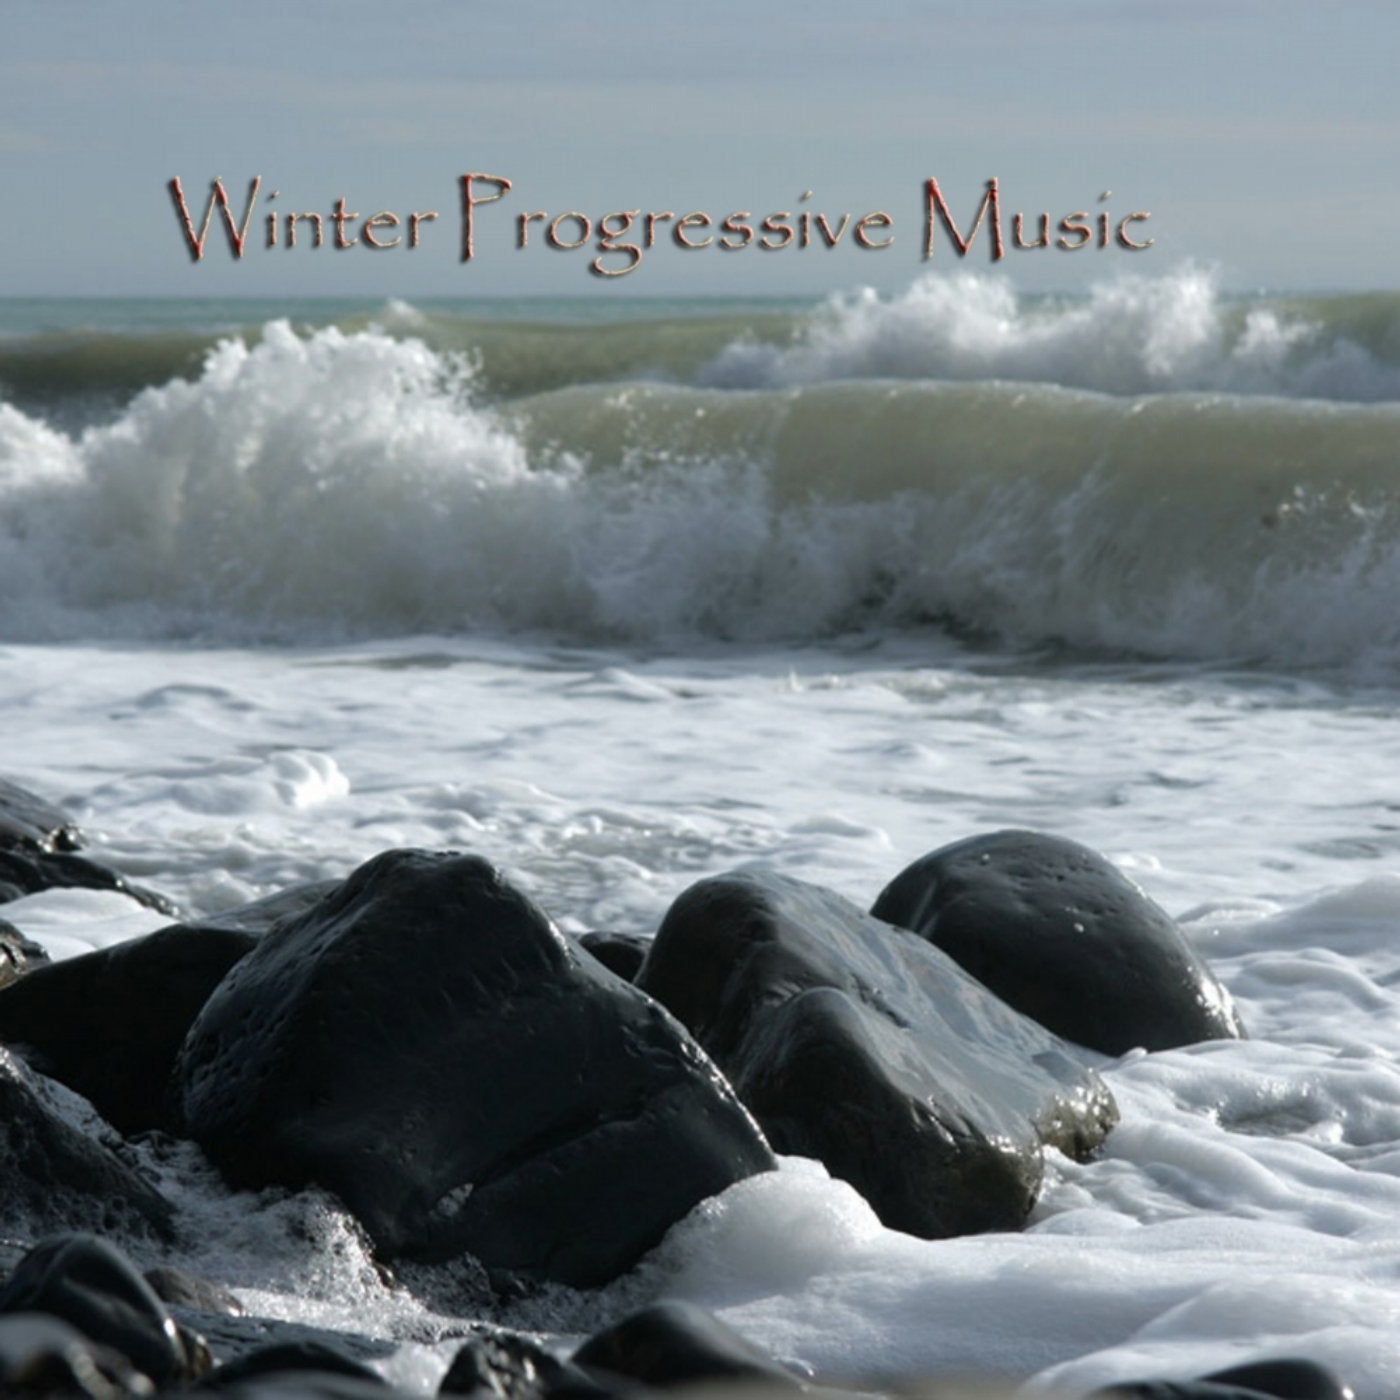 Winter Progressive Music